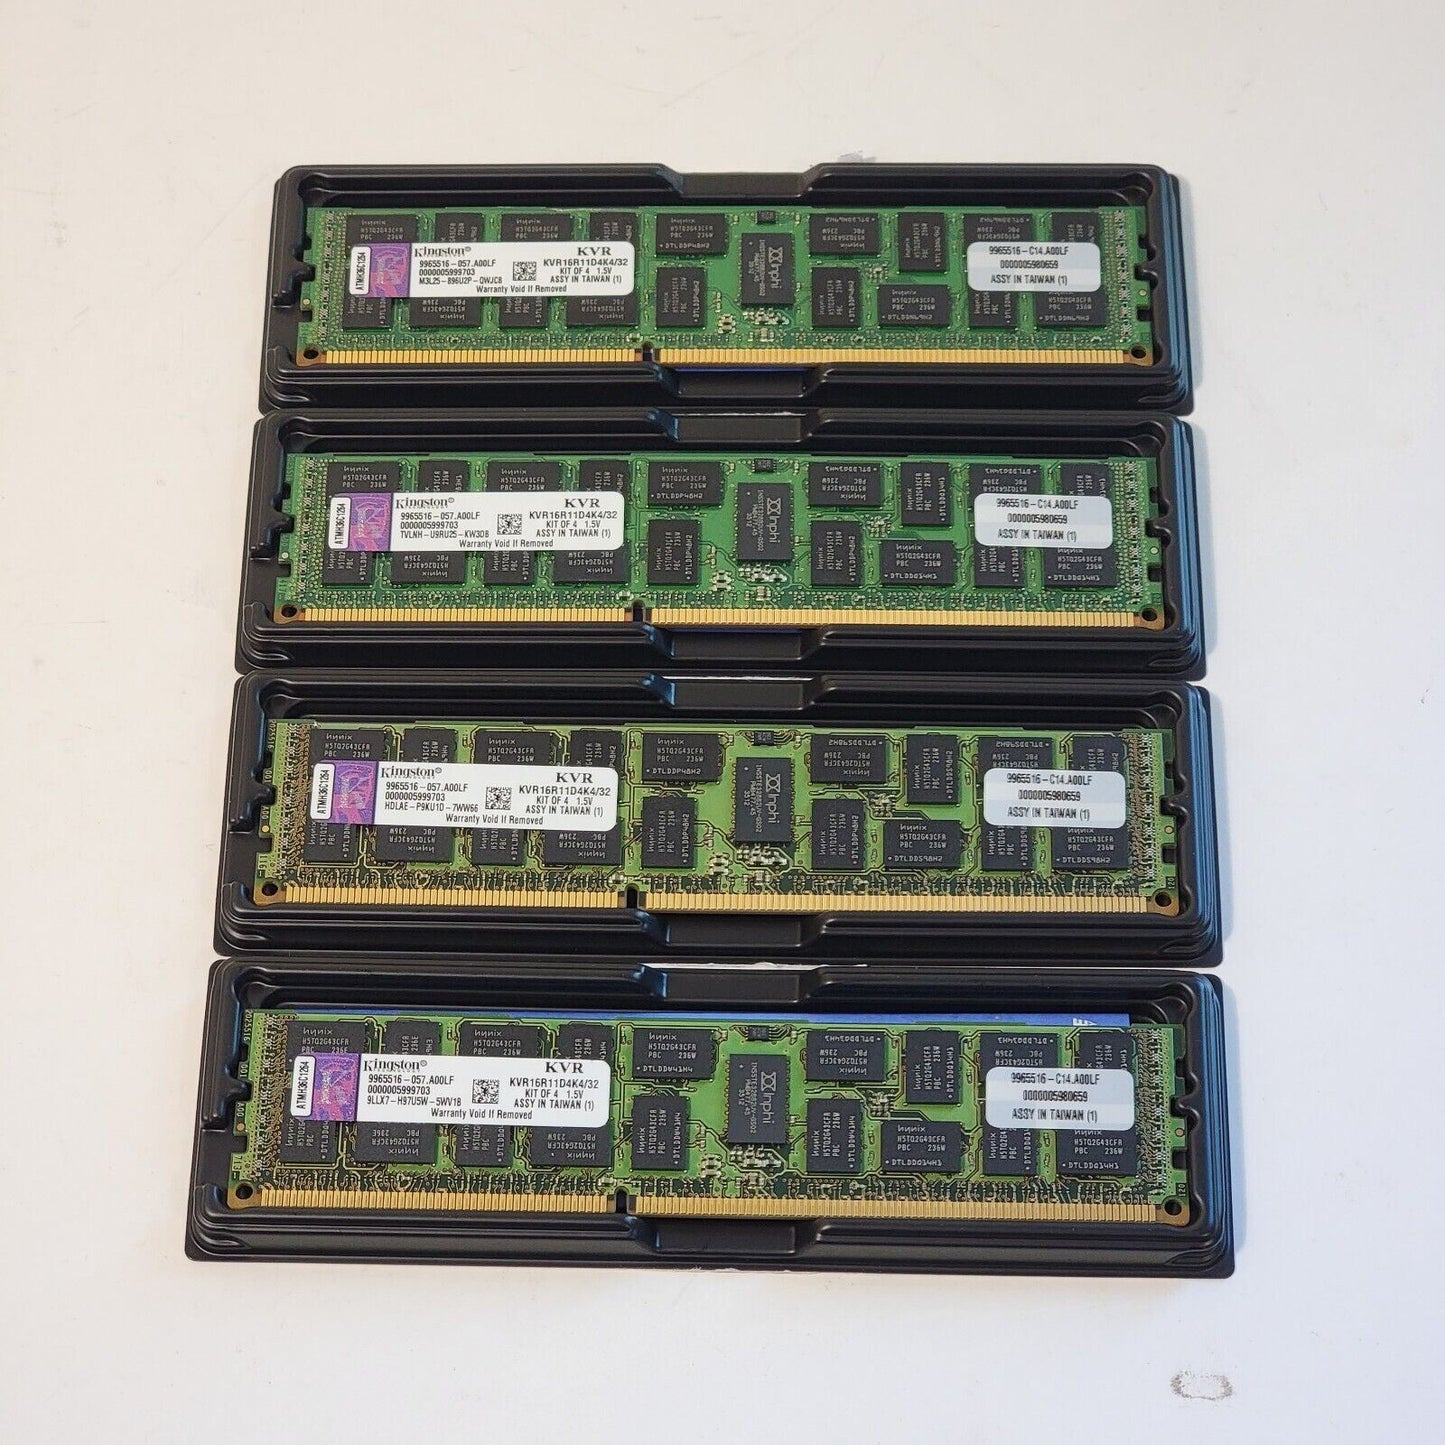 4x Kingston KVR16R11D4K4/32 32GB 4x8GB PC3 12800 DDR3 SDRAM ECC Server Memory